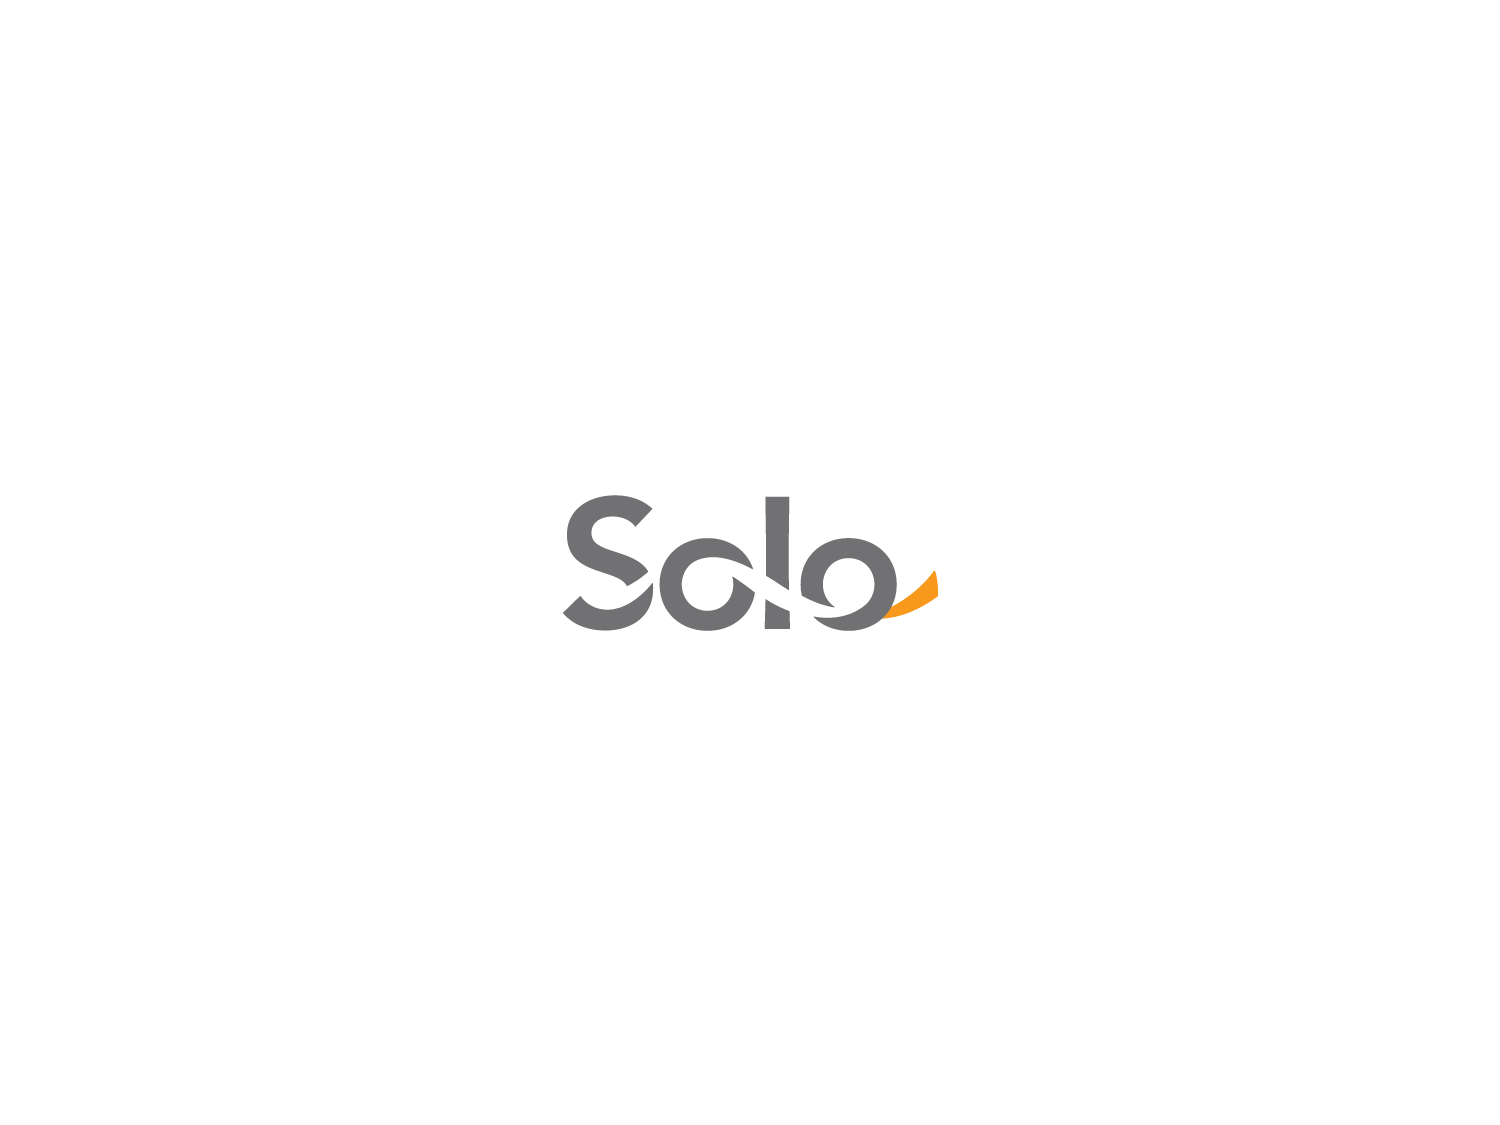 Solo Logo - PLC Design — Solo brand identity, logo design, color, typography ...